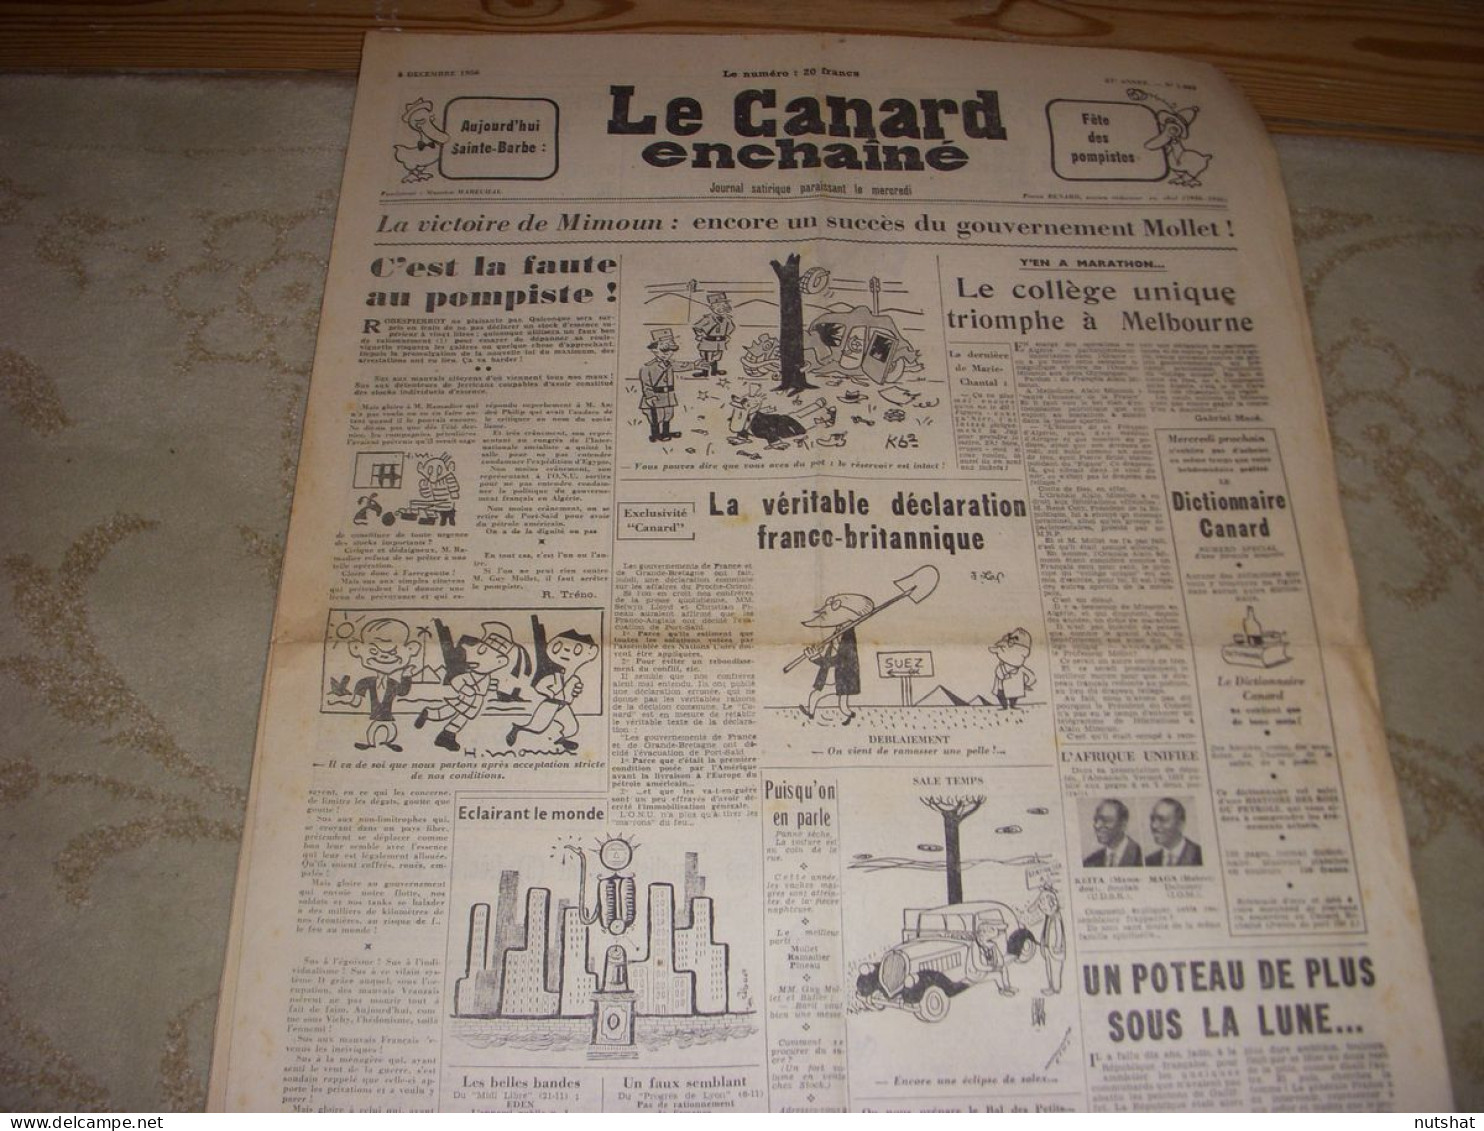 CANARD ENCHAINE 1885 05.12.1956 JO MELBOURNE MIMOUN La CHANSON FRANCAISE - Politik